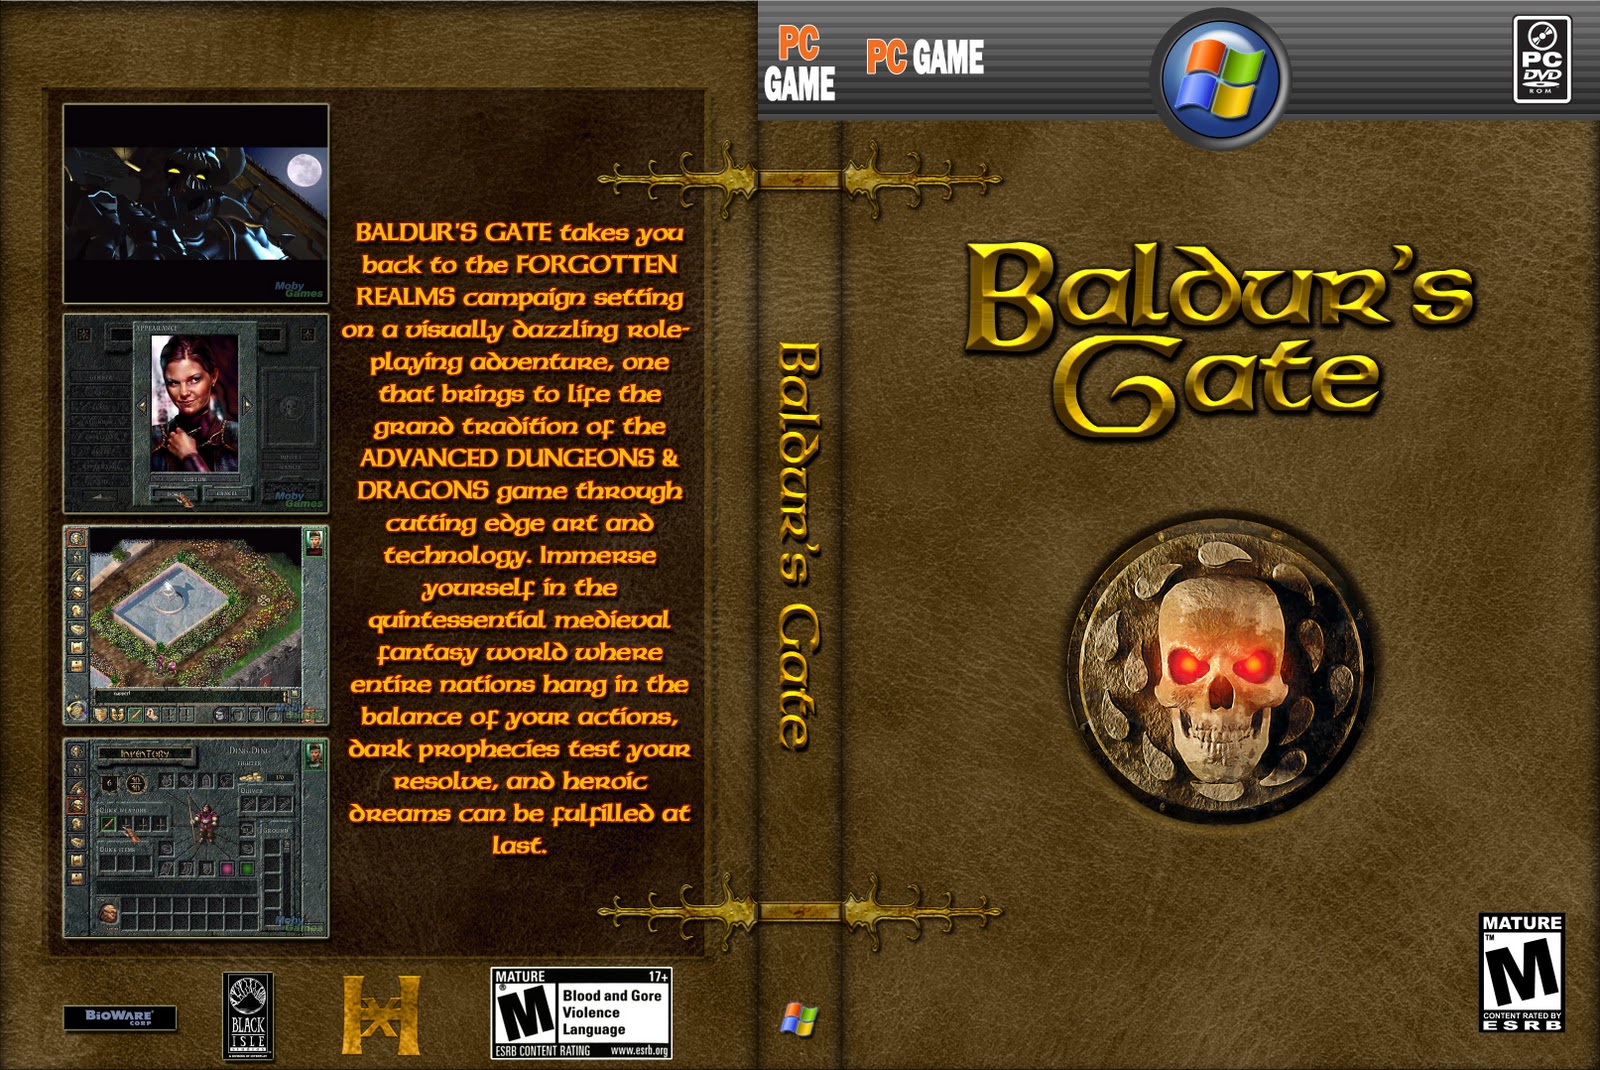 Baldurs gate похожие игры. Baldur's Gate 1998 обложка. Балдурс гейт 1 обложка. Baldur's Gate обложка ps1. Болдерсгейт 3 обложка.